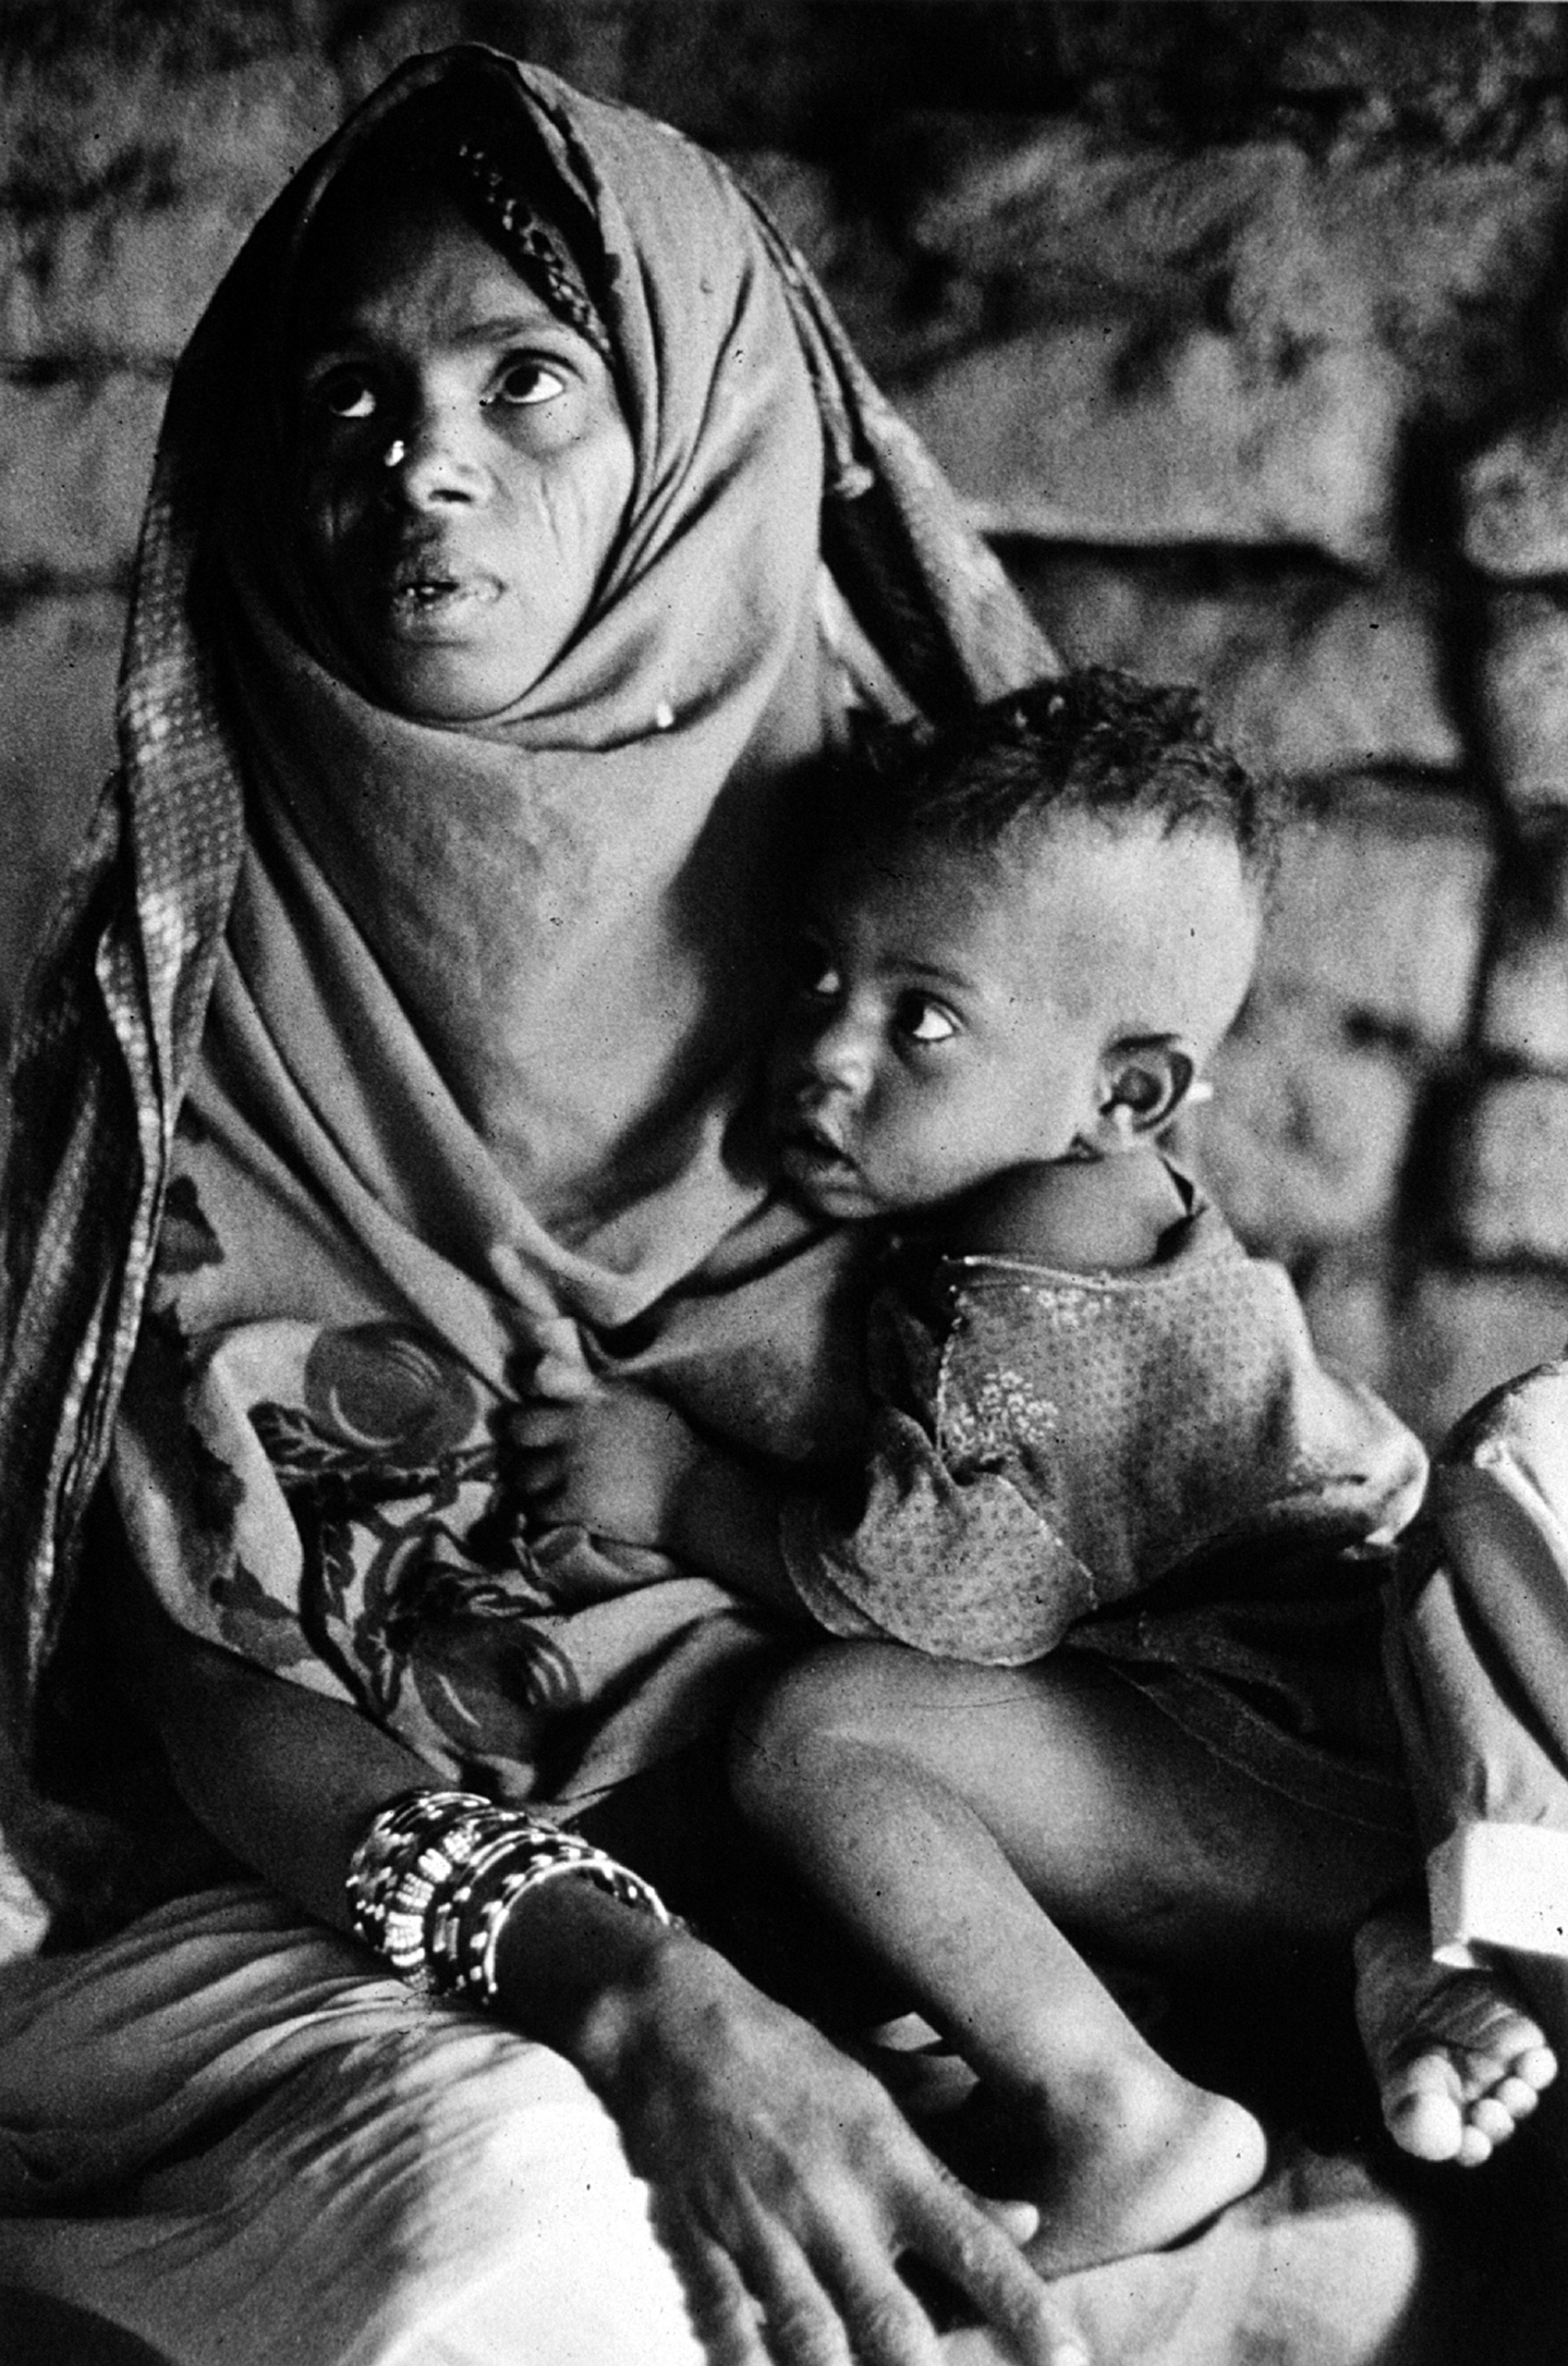 Eritrean refugees, Khashm el Girba, Sudan.